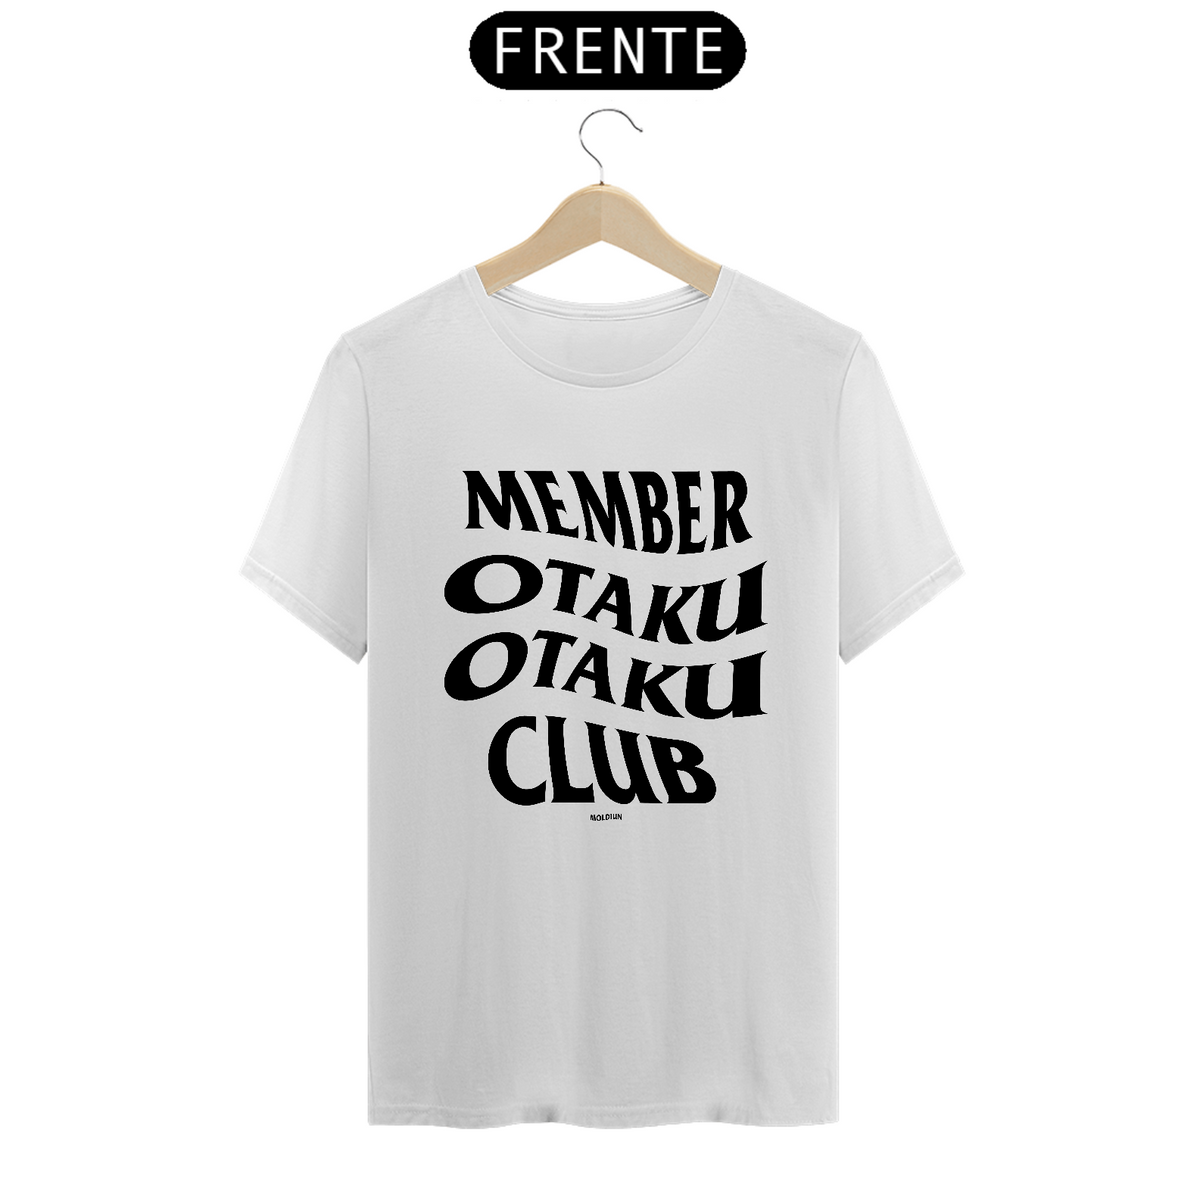 Nome do produto: Member Otaku Club (frente)